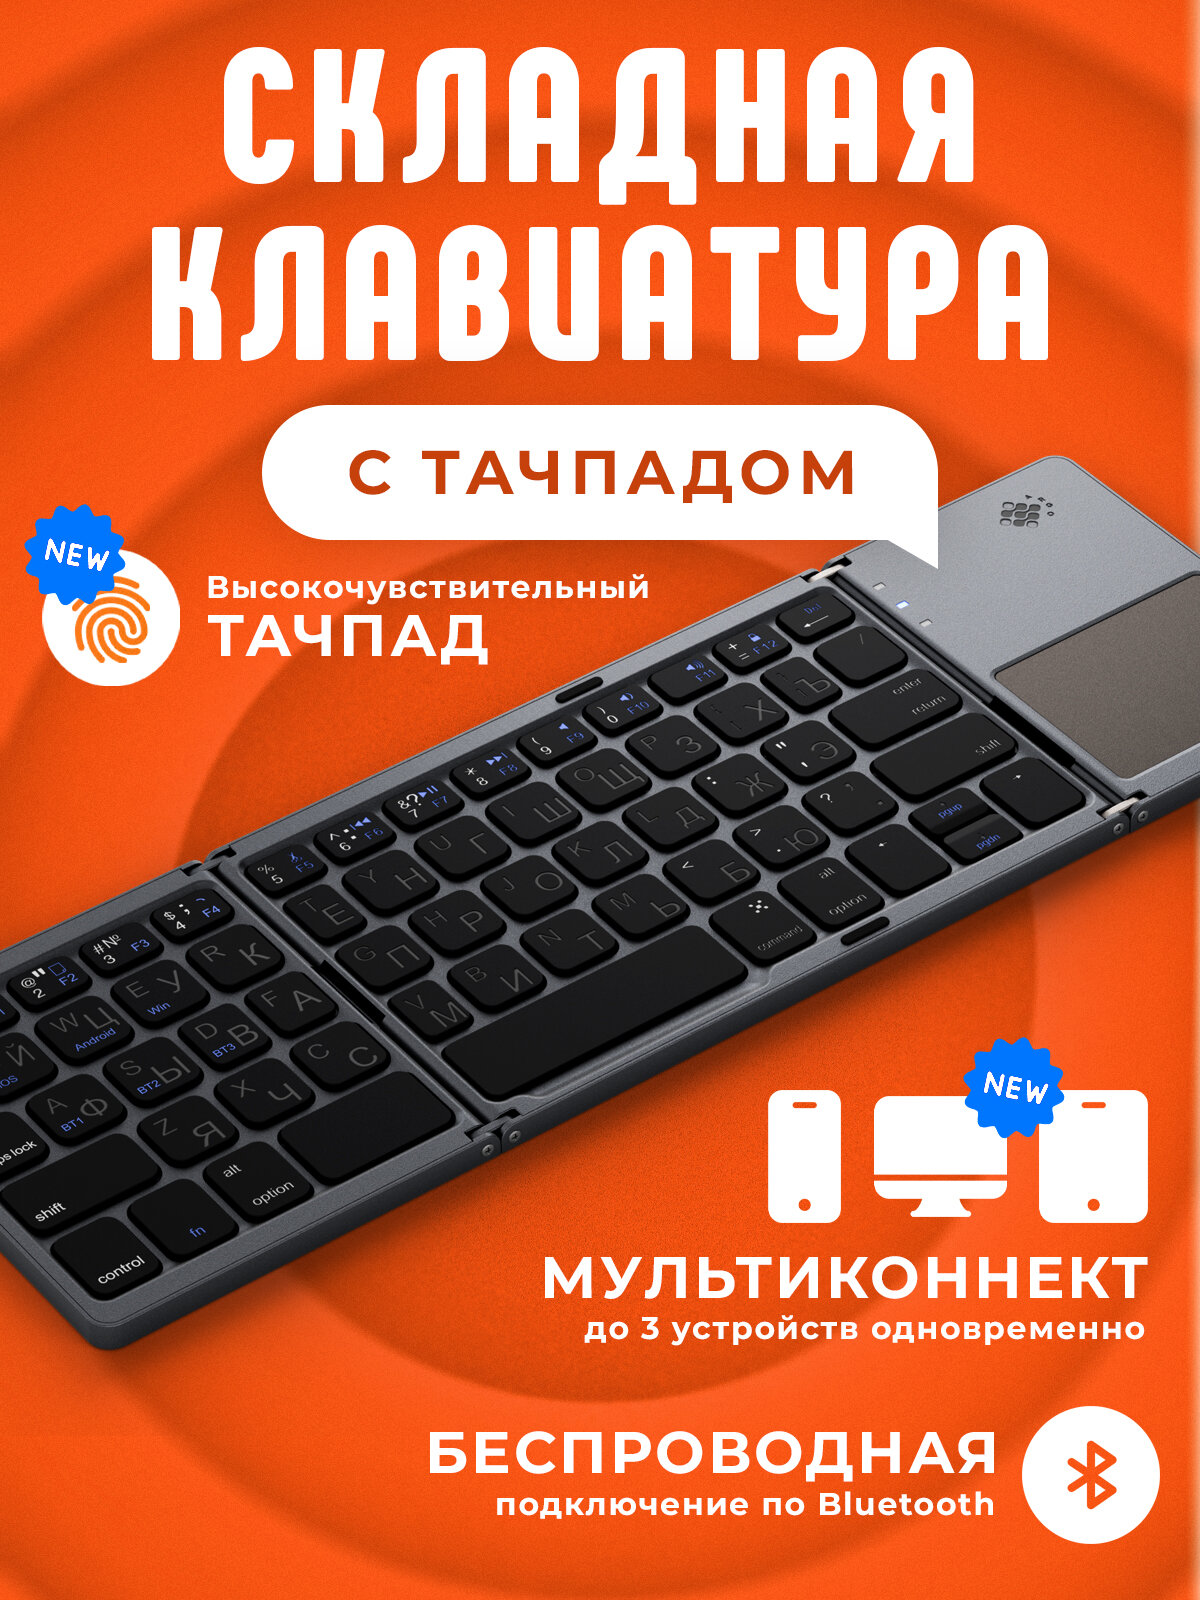 Клавиатура складная ARGO Bluetooth + Тачпад FK033PLUS-MC (Серо-черный металлик) Русская раскладка+Мультиконнект